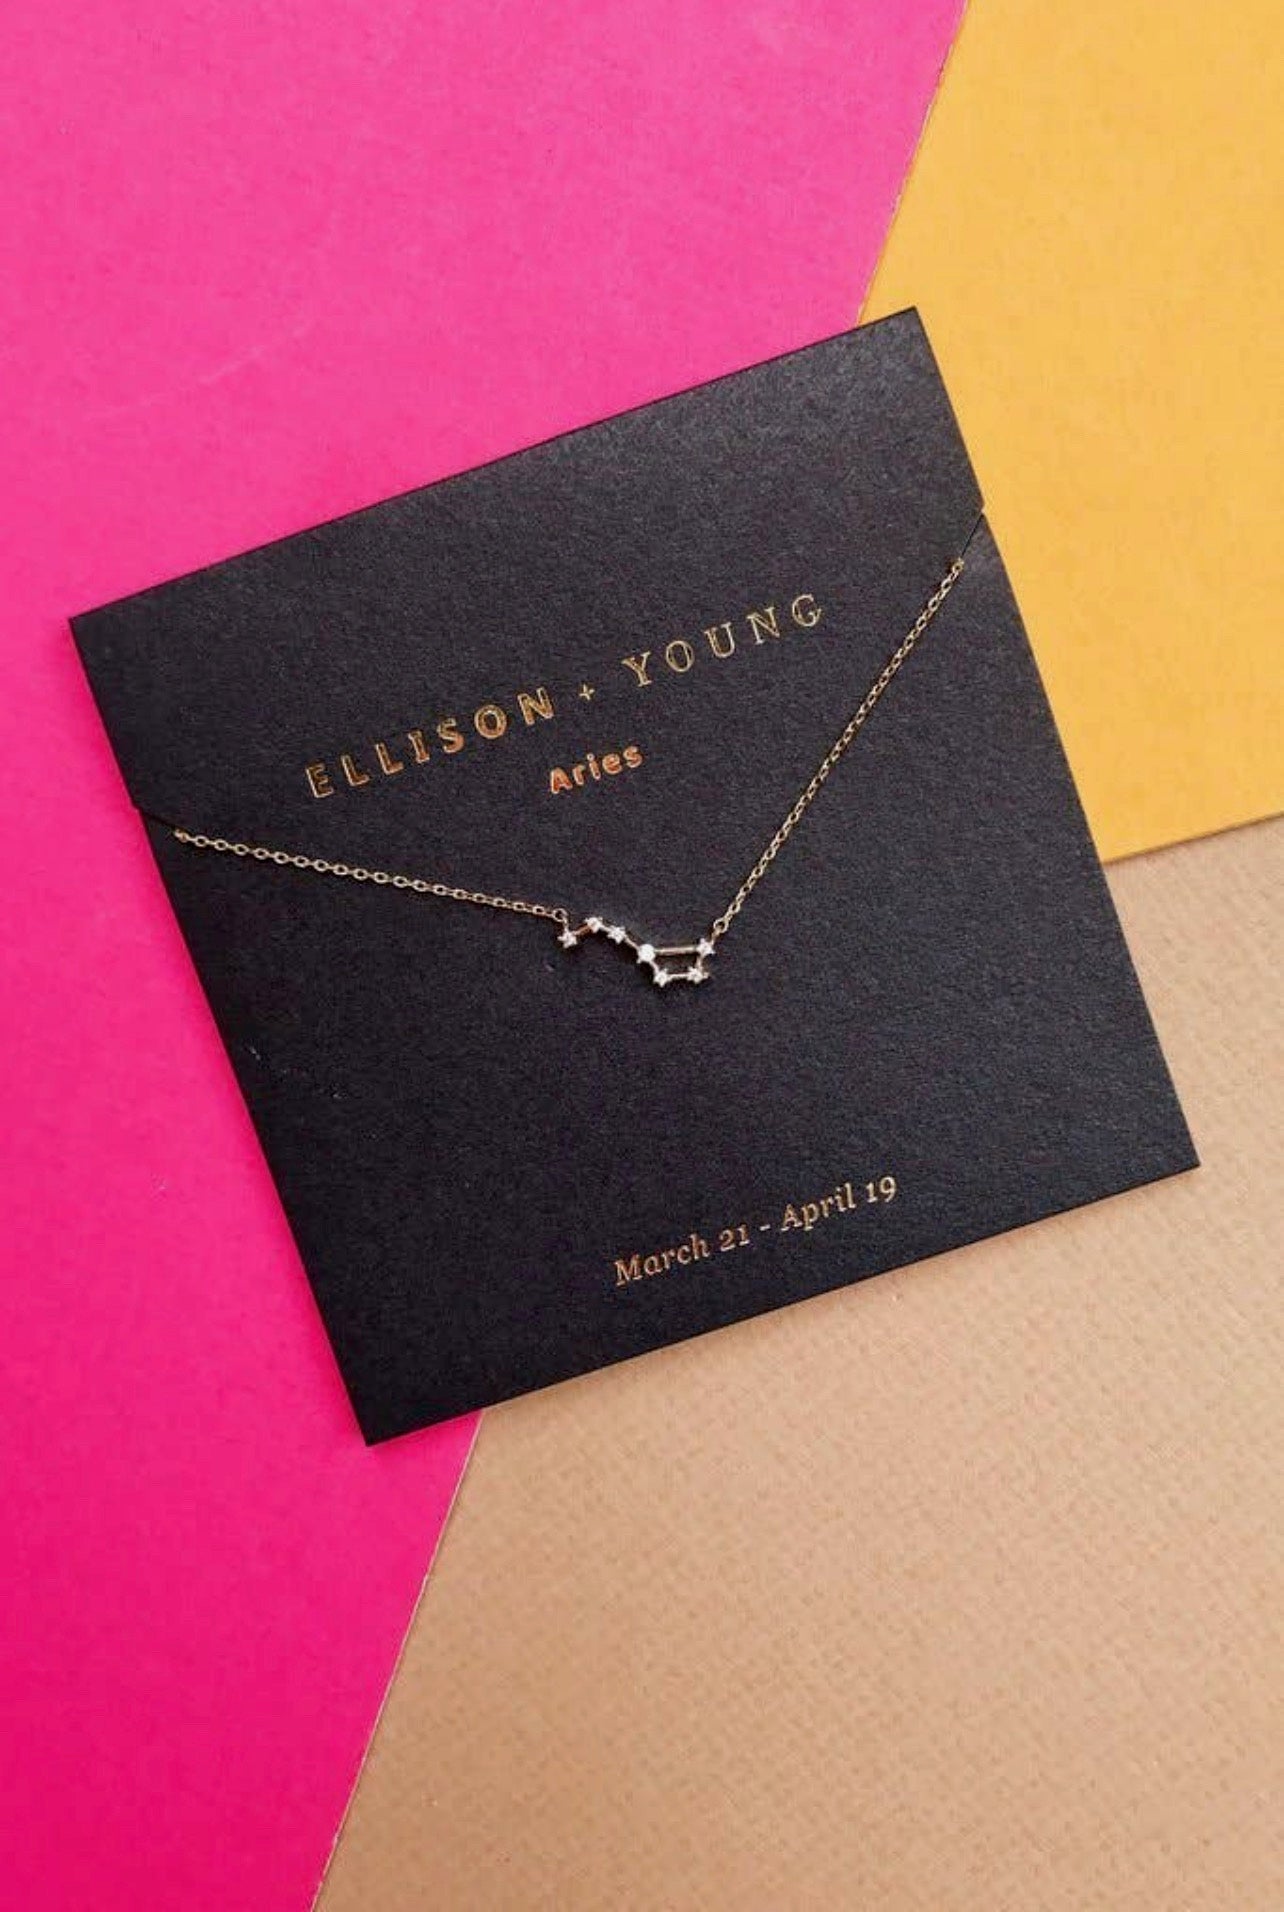 Ellison & Young-Zodiac Necklace